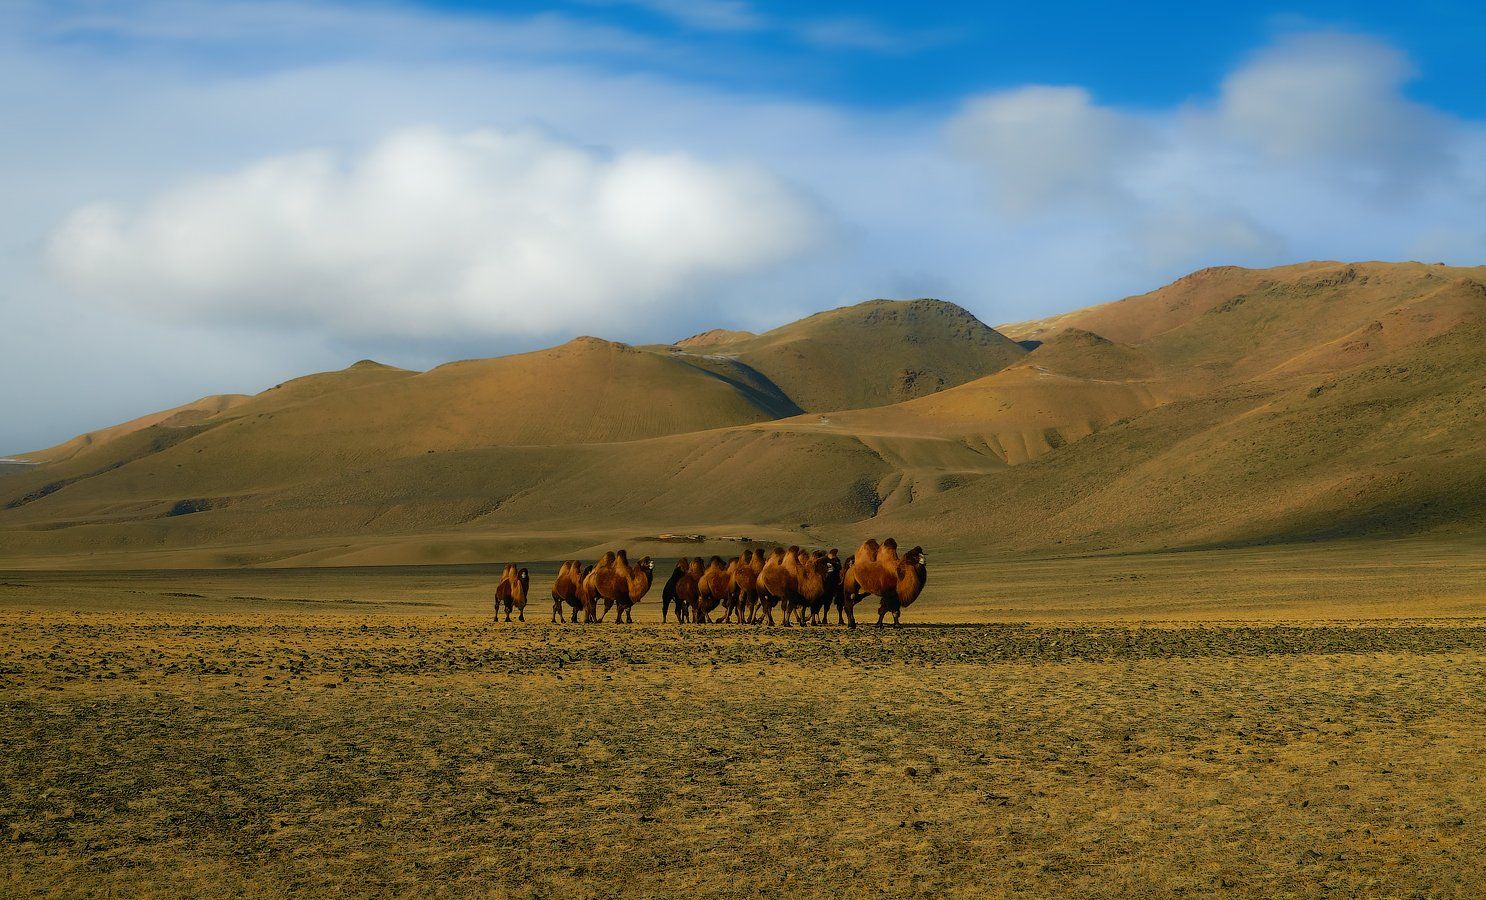 Camels, Caravan, Верблюды, Животные, Караван, holod